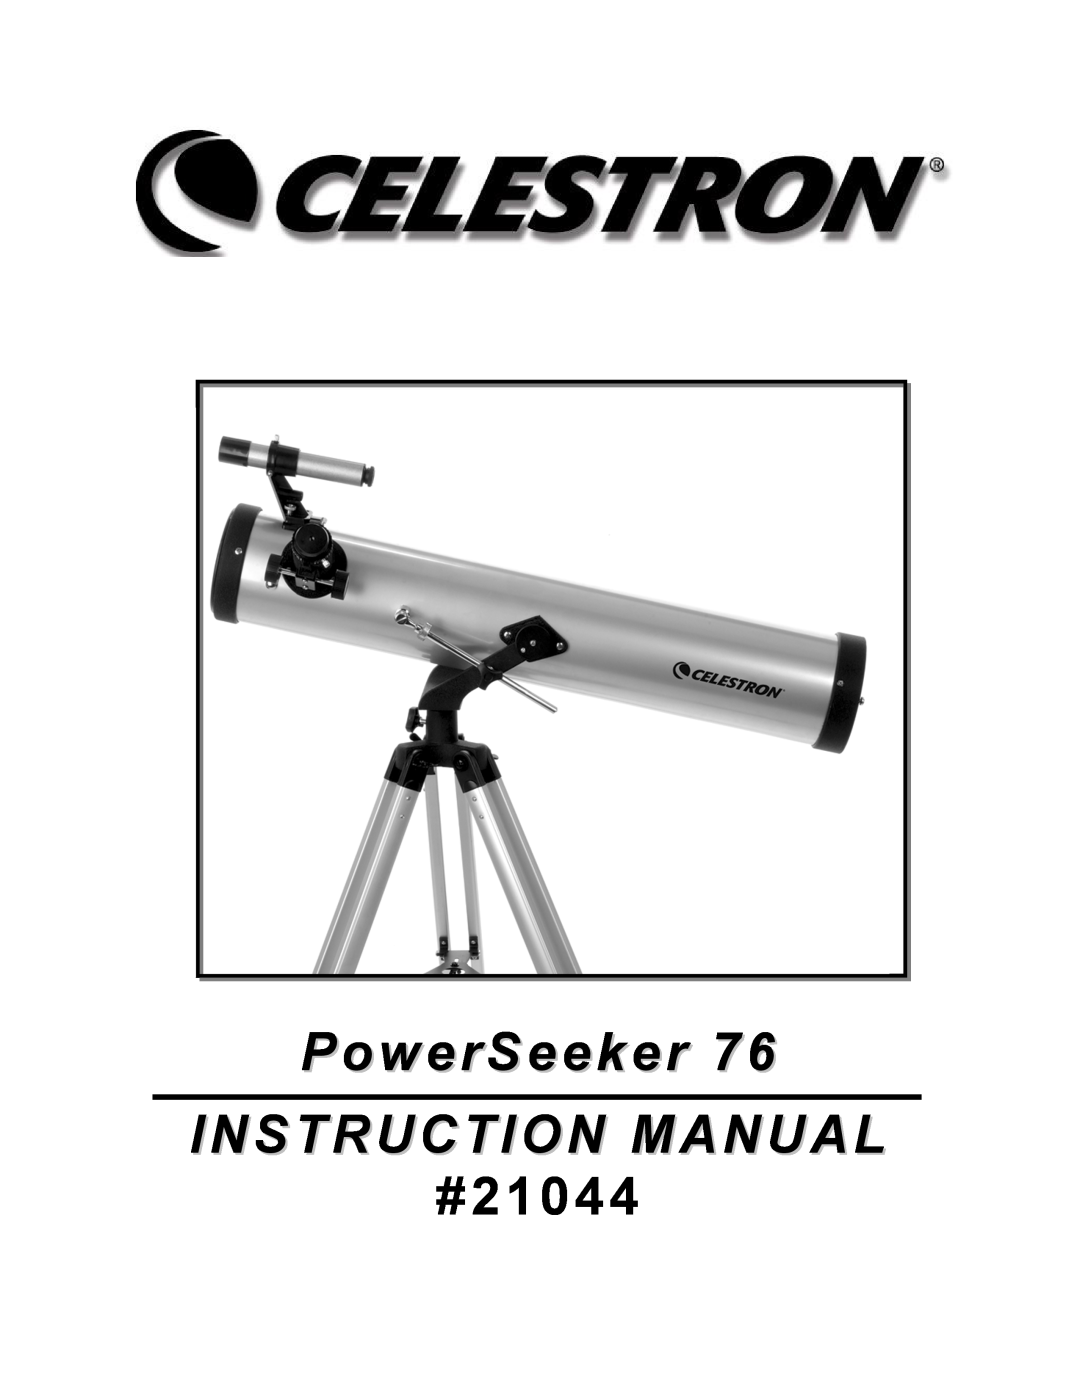 Celestron 76 manual #21044 